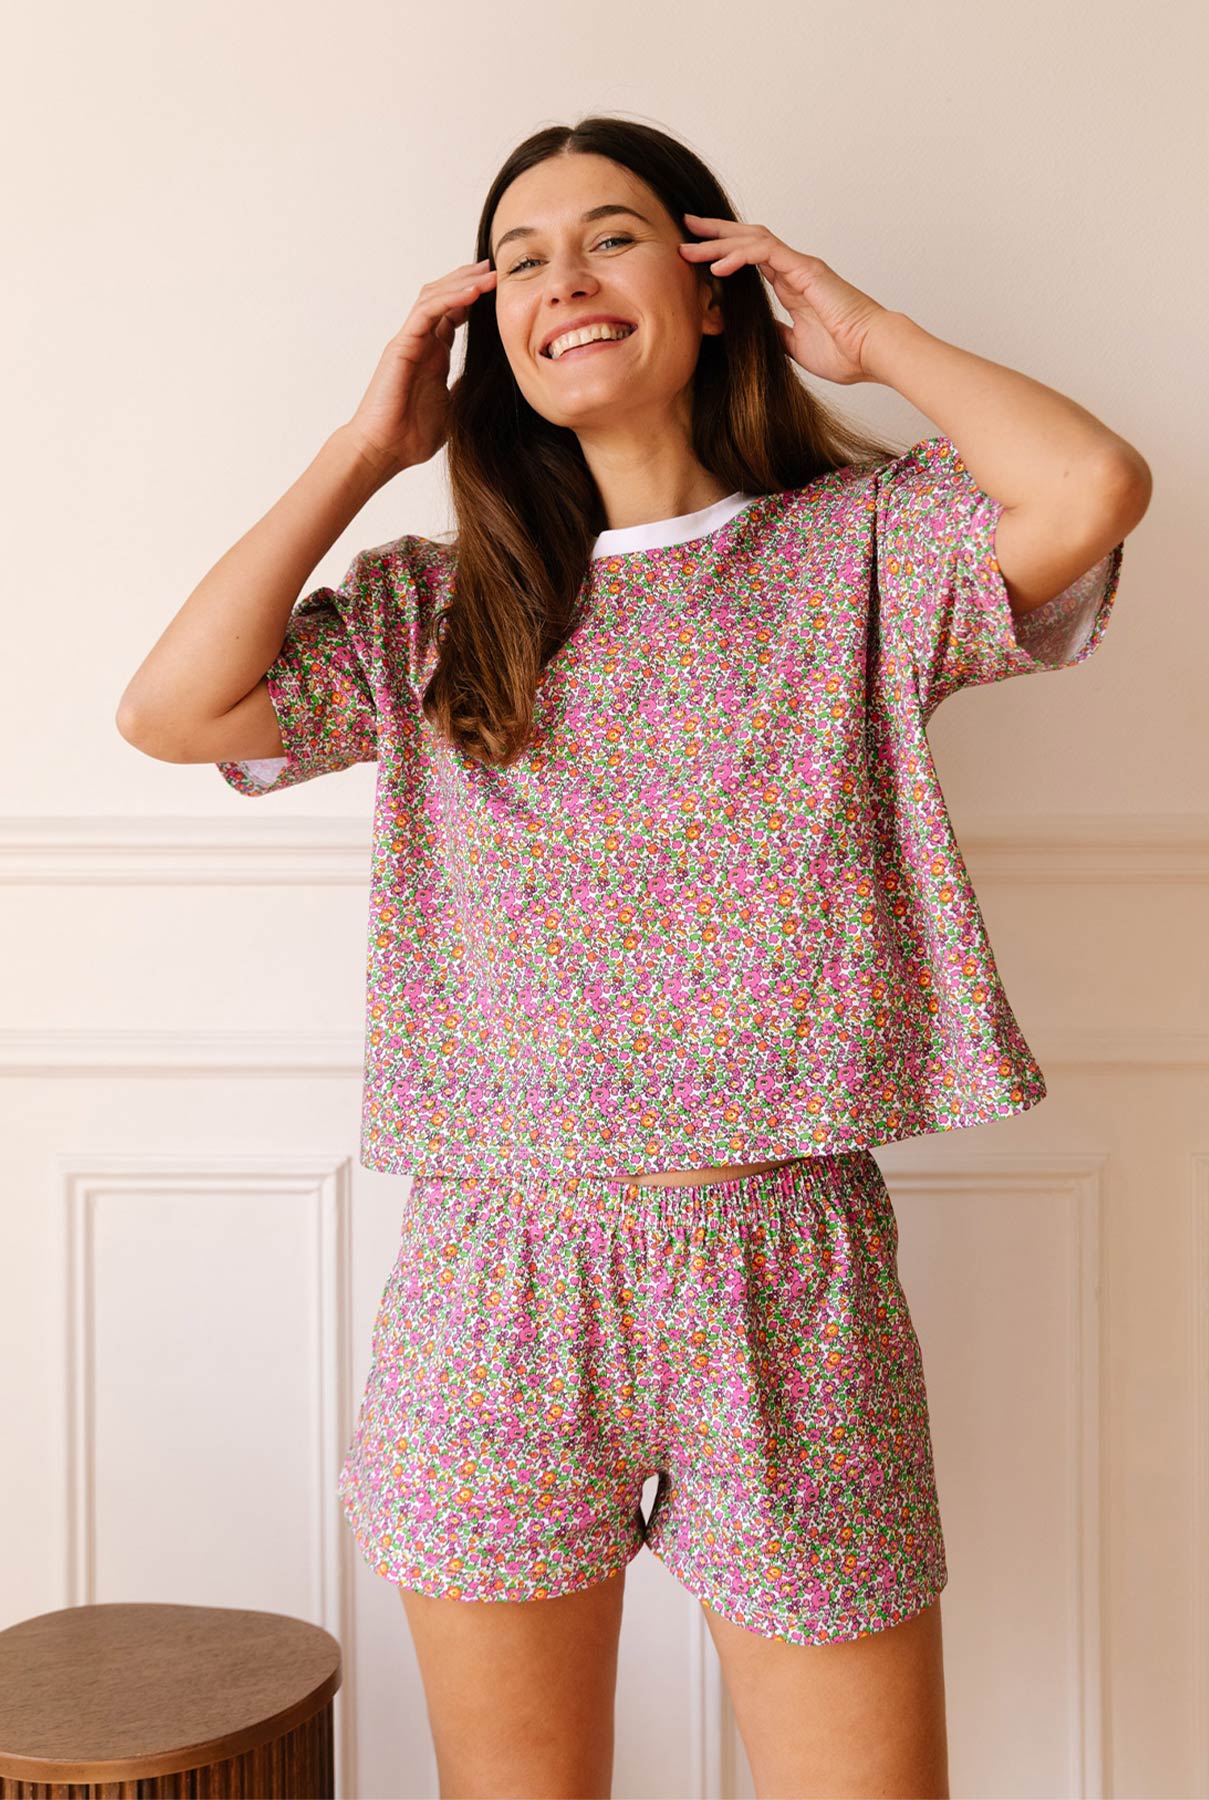 Pyjama : 9 jolies marques à connaître